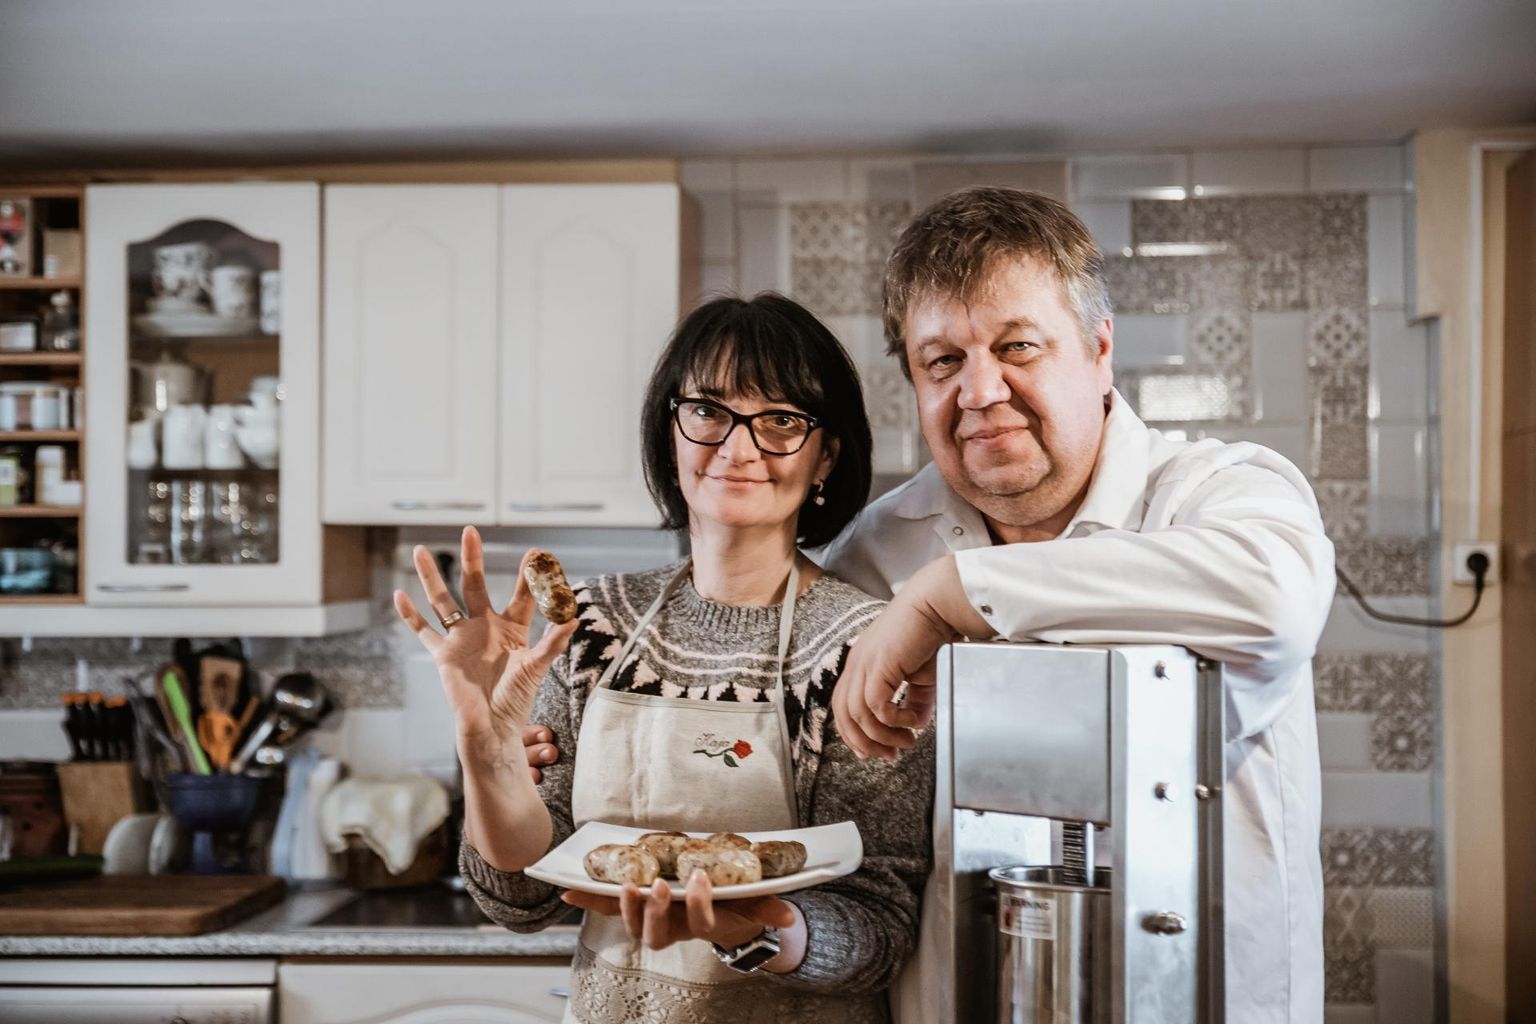 Kartulivorstidega üllatas Otto talu peremees Urmas Kivisalu, kes abikaasa Kaja Kivisaluga neid koduköögis perele valmistab.